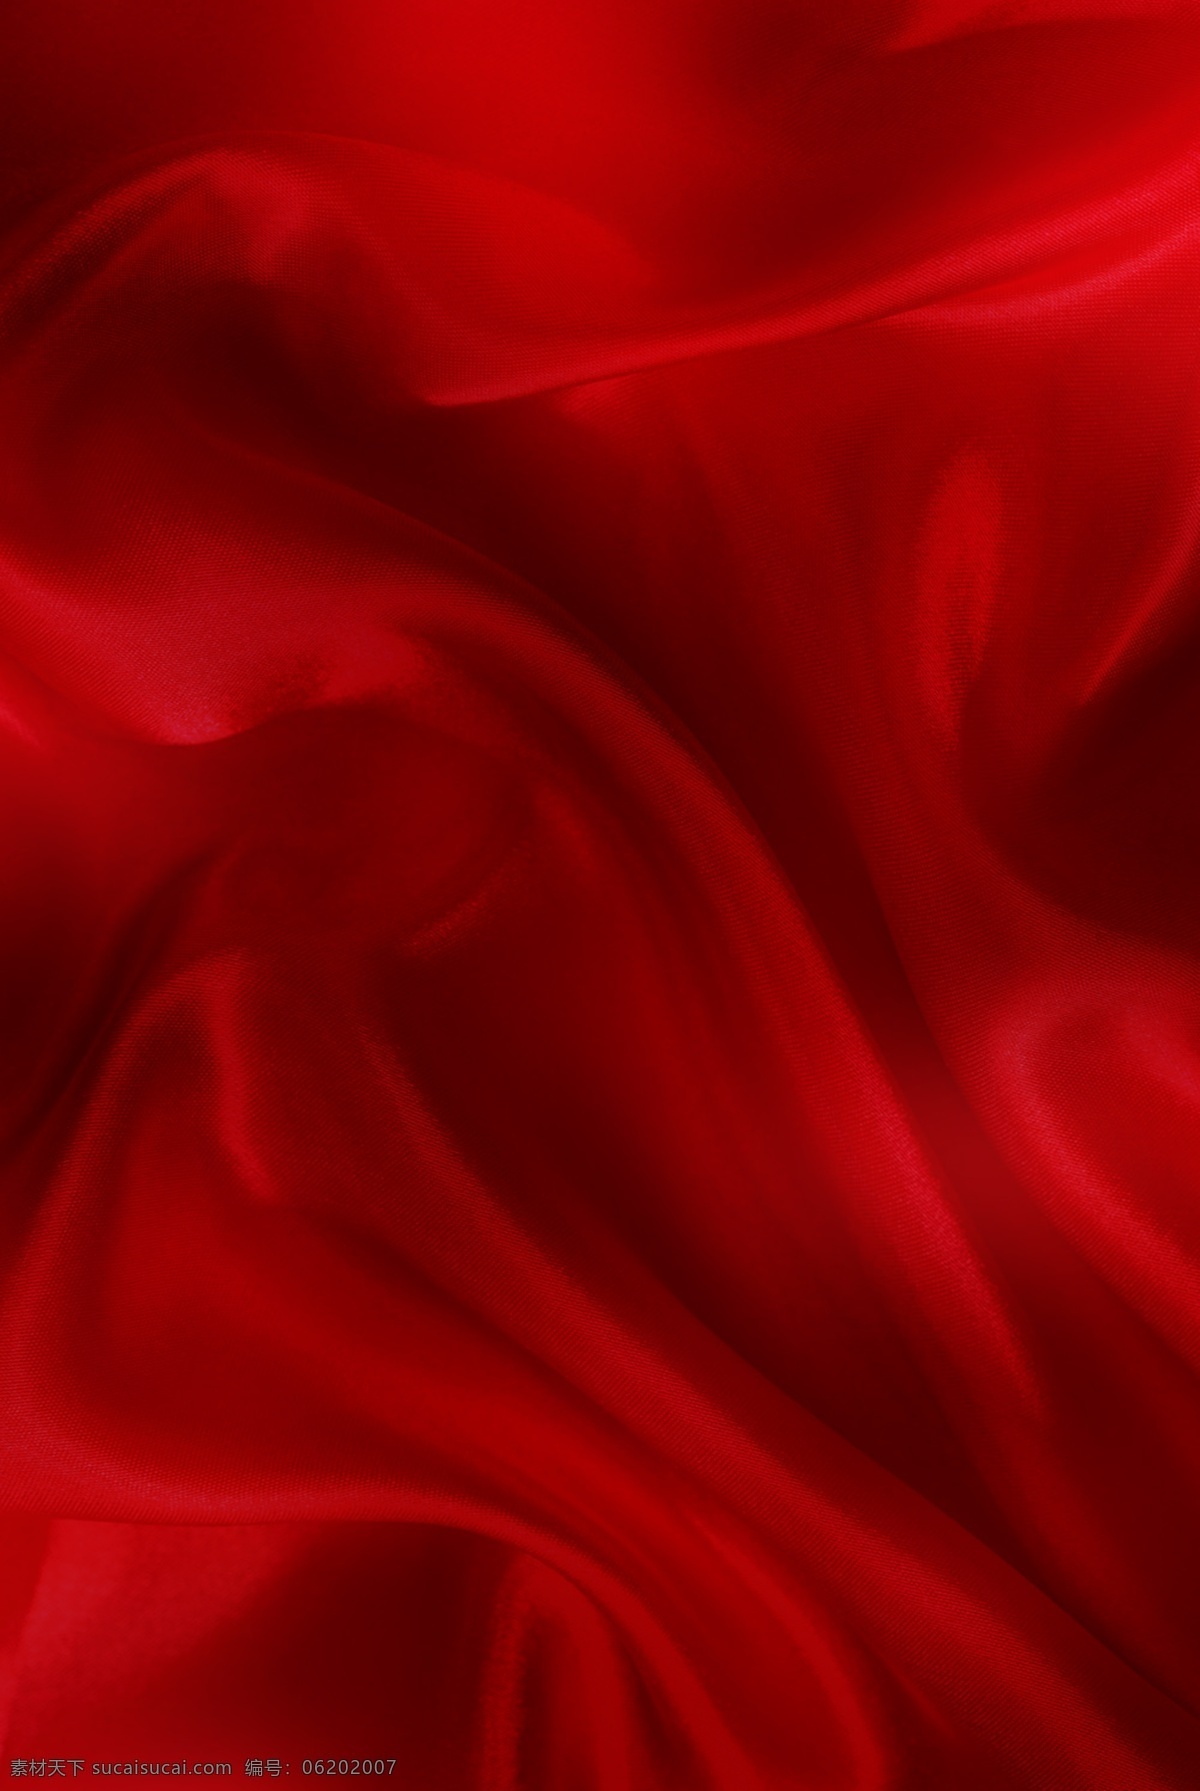 红绸子底纹 底纹 纹路 纹理 背景 红背景 开盘 地产 房地产开盘 绸子底纹 红绸子